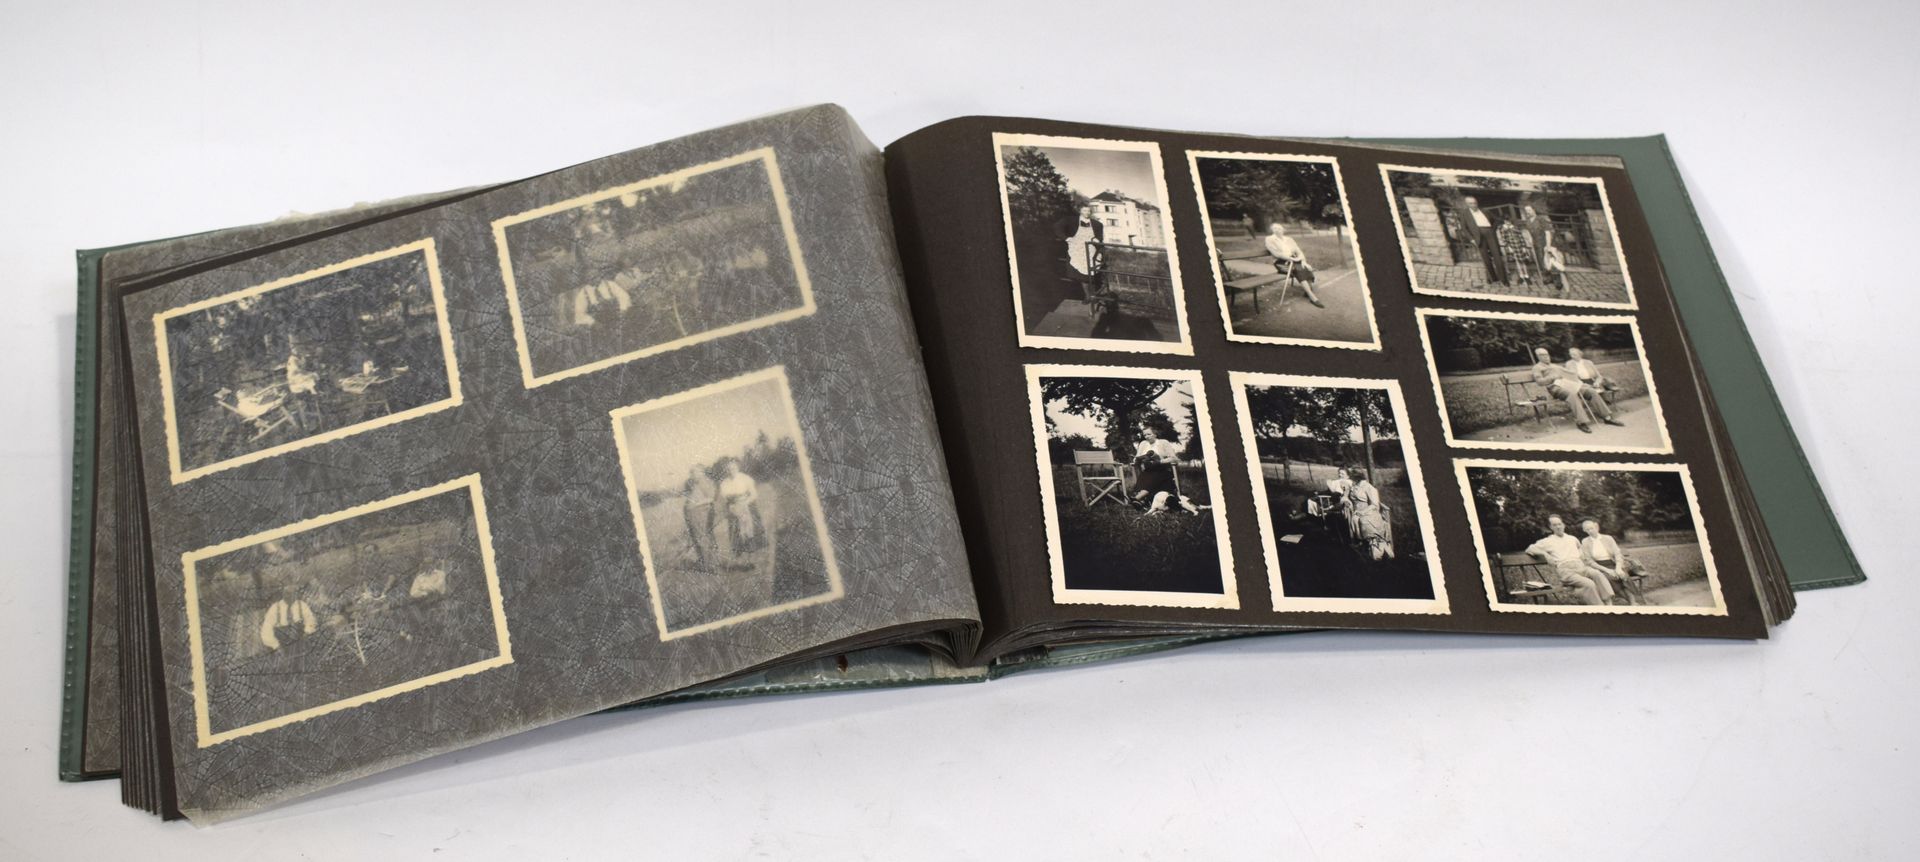 Null (相册）家庭相册，其中有许多成员的照片，但也有1930年代摩泽尔葡萄酒游行的照片（9张），一群年轻人的照片，包括一个在火车头前的照片，一些有汽车的照片&hellip;